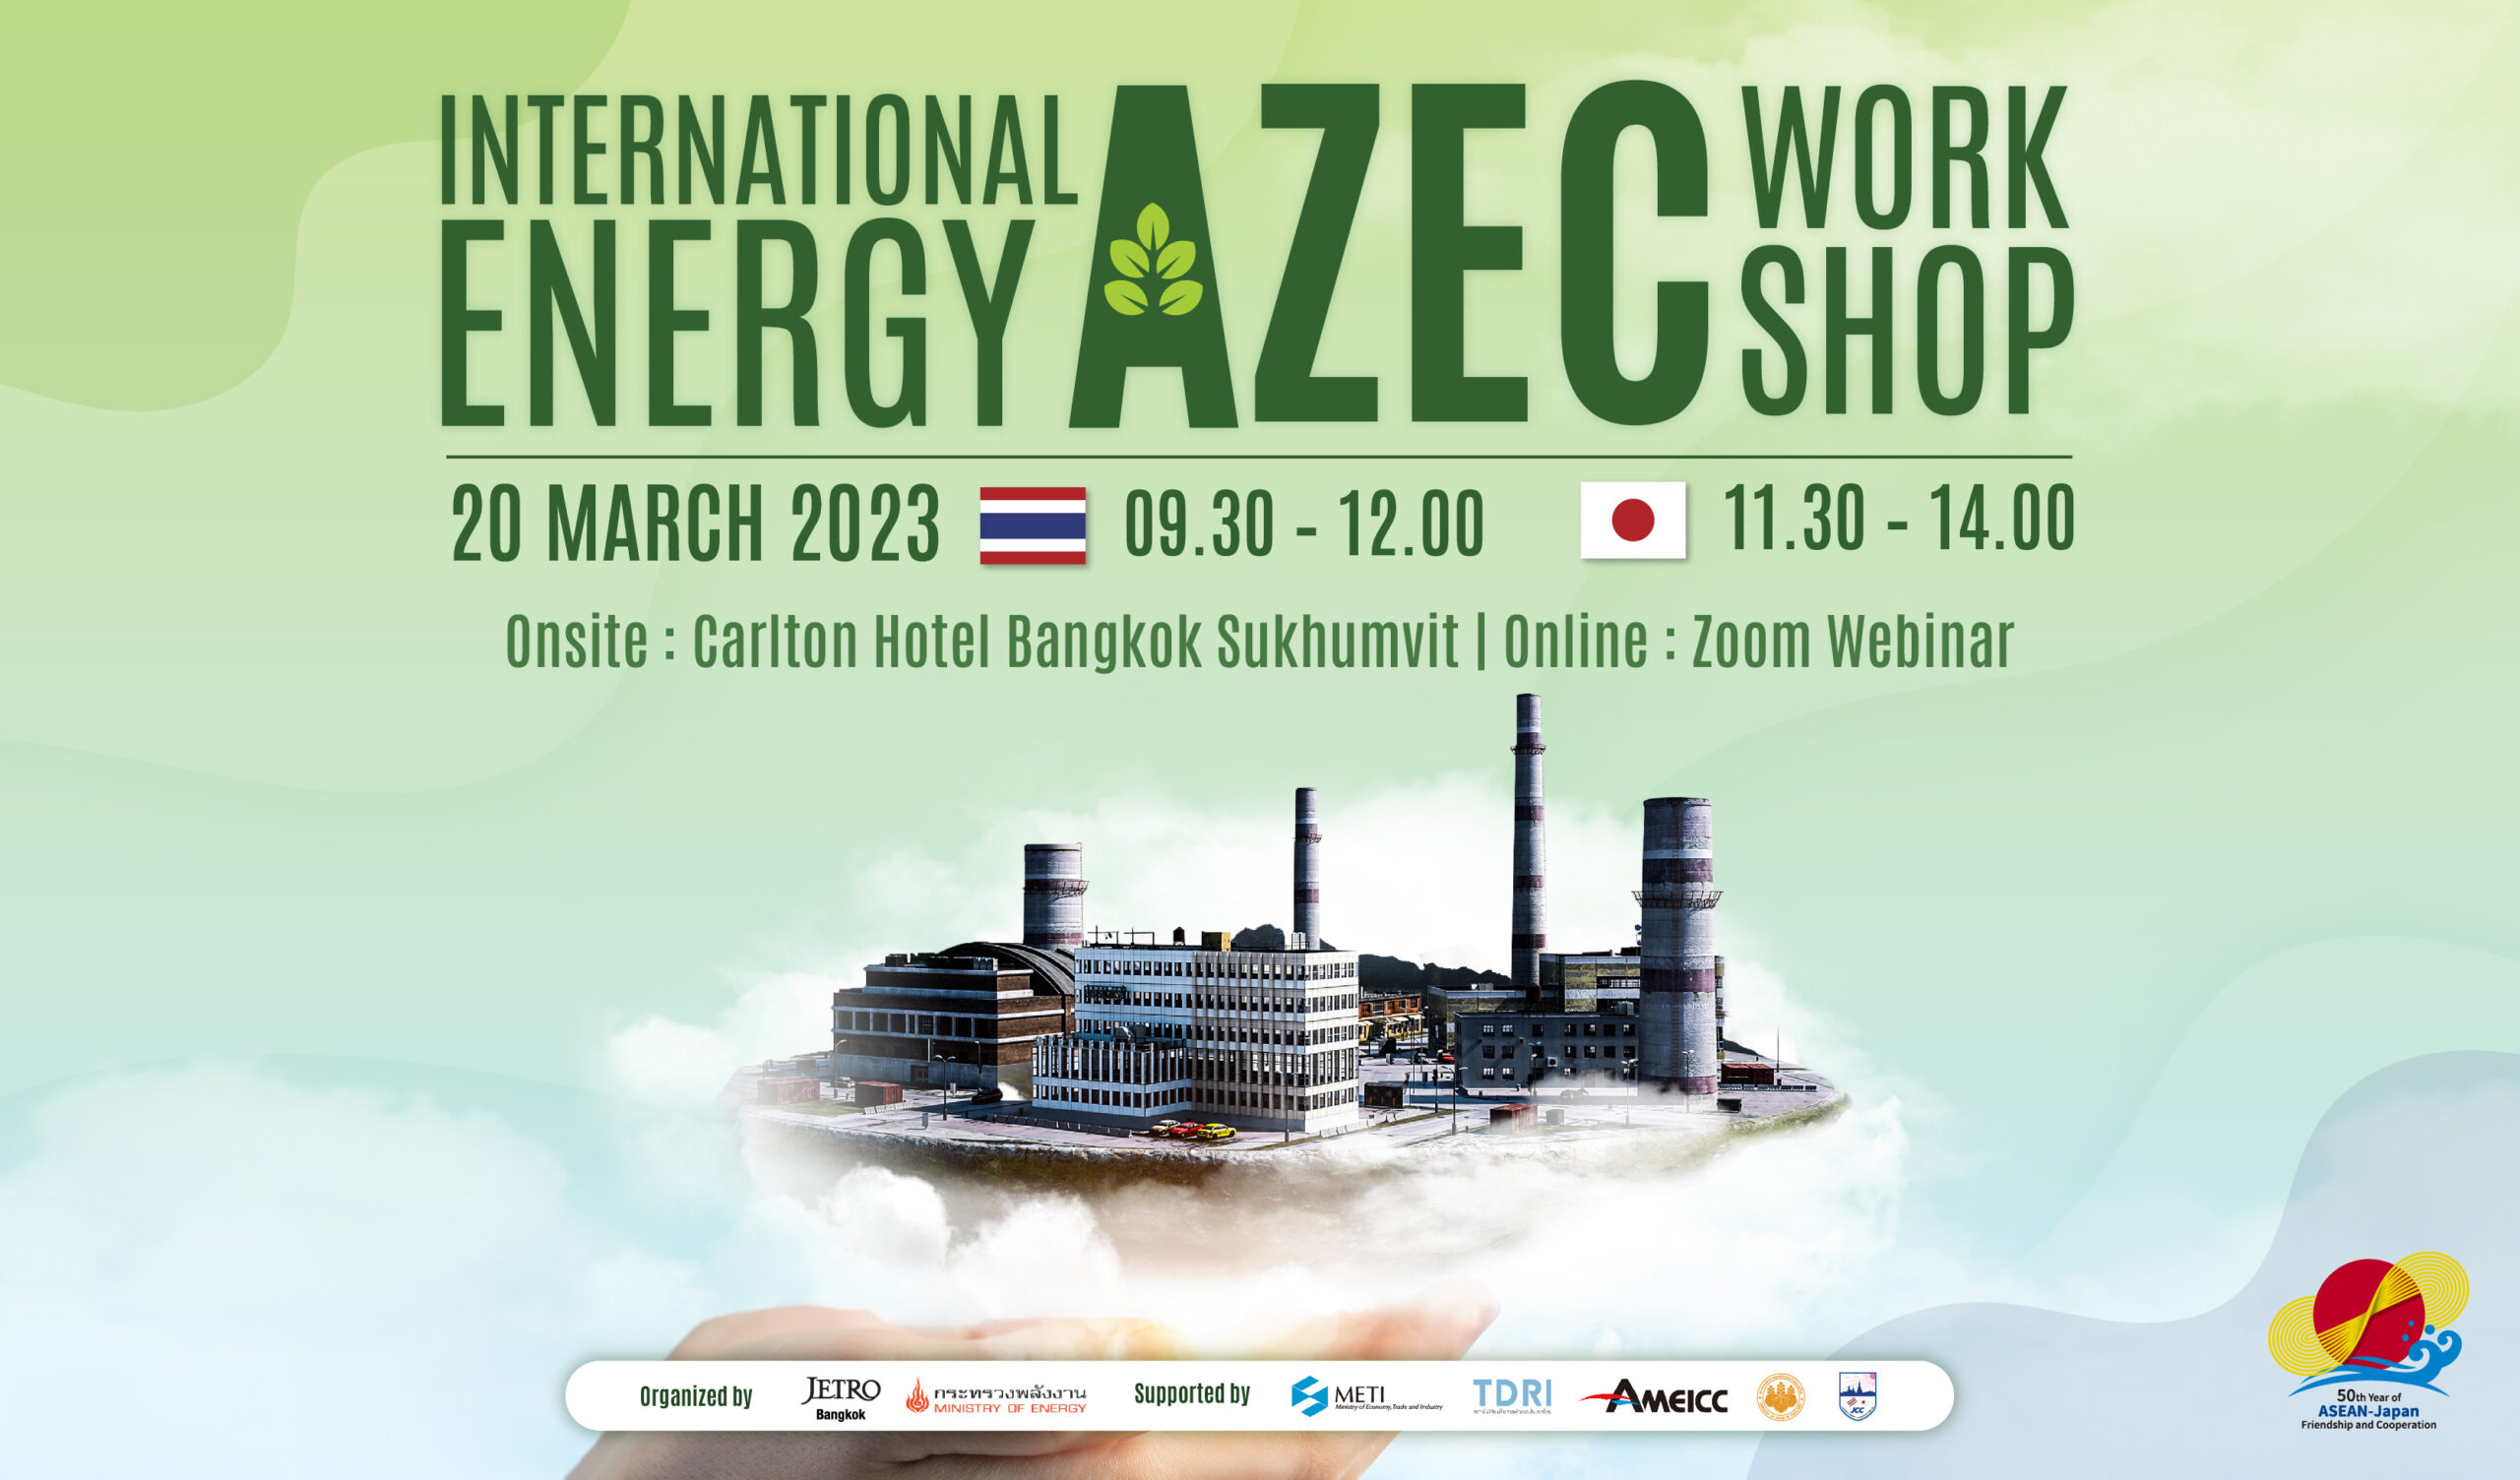 2023年3月20日（月）ハイブリッド開催！ “International Energy AZEC Workshop”のメイン画像